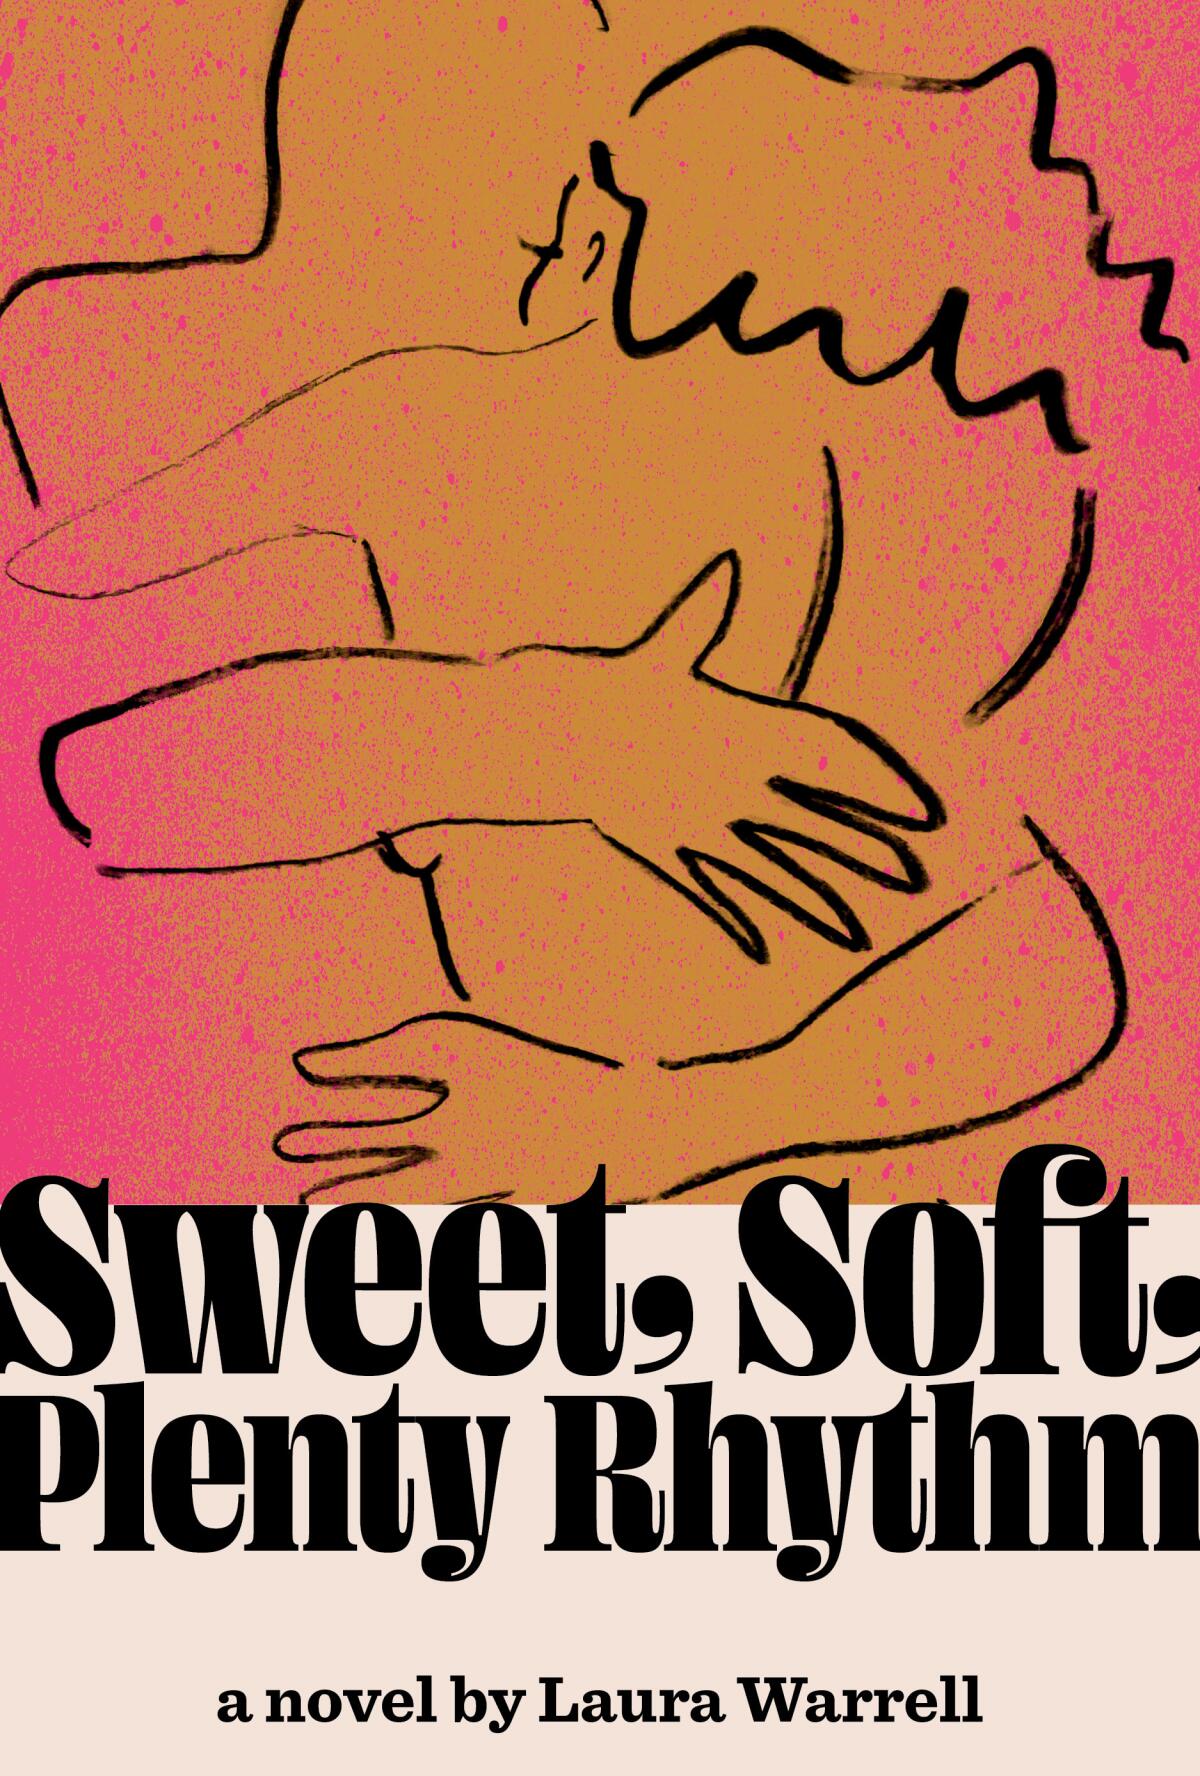 "Sweet, Soft, Plenty Rhythm," a novel by Laura Warrell